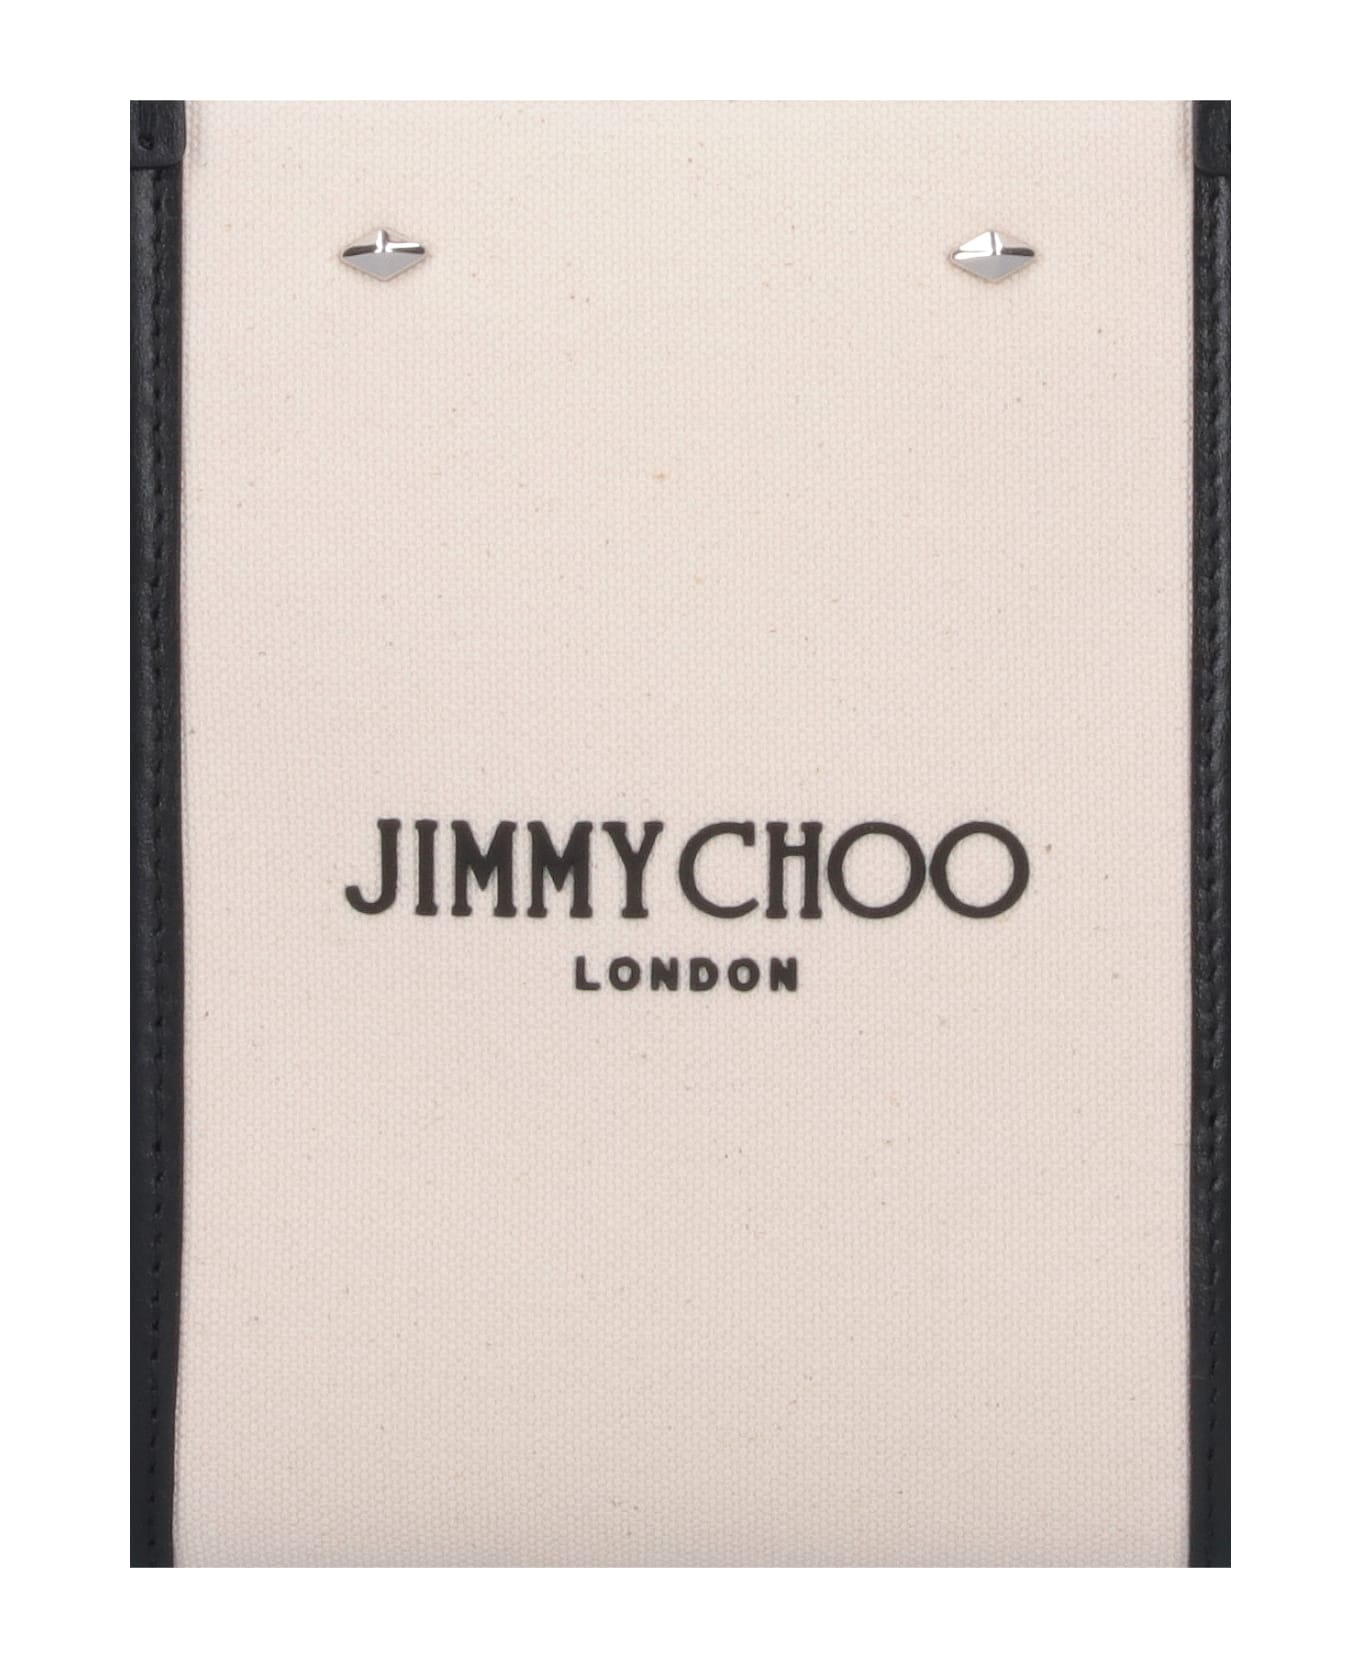 Jimmy Choo N/s Mini Tote Bag - Crema トートバッグ